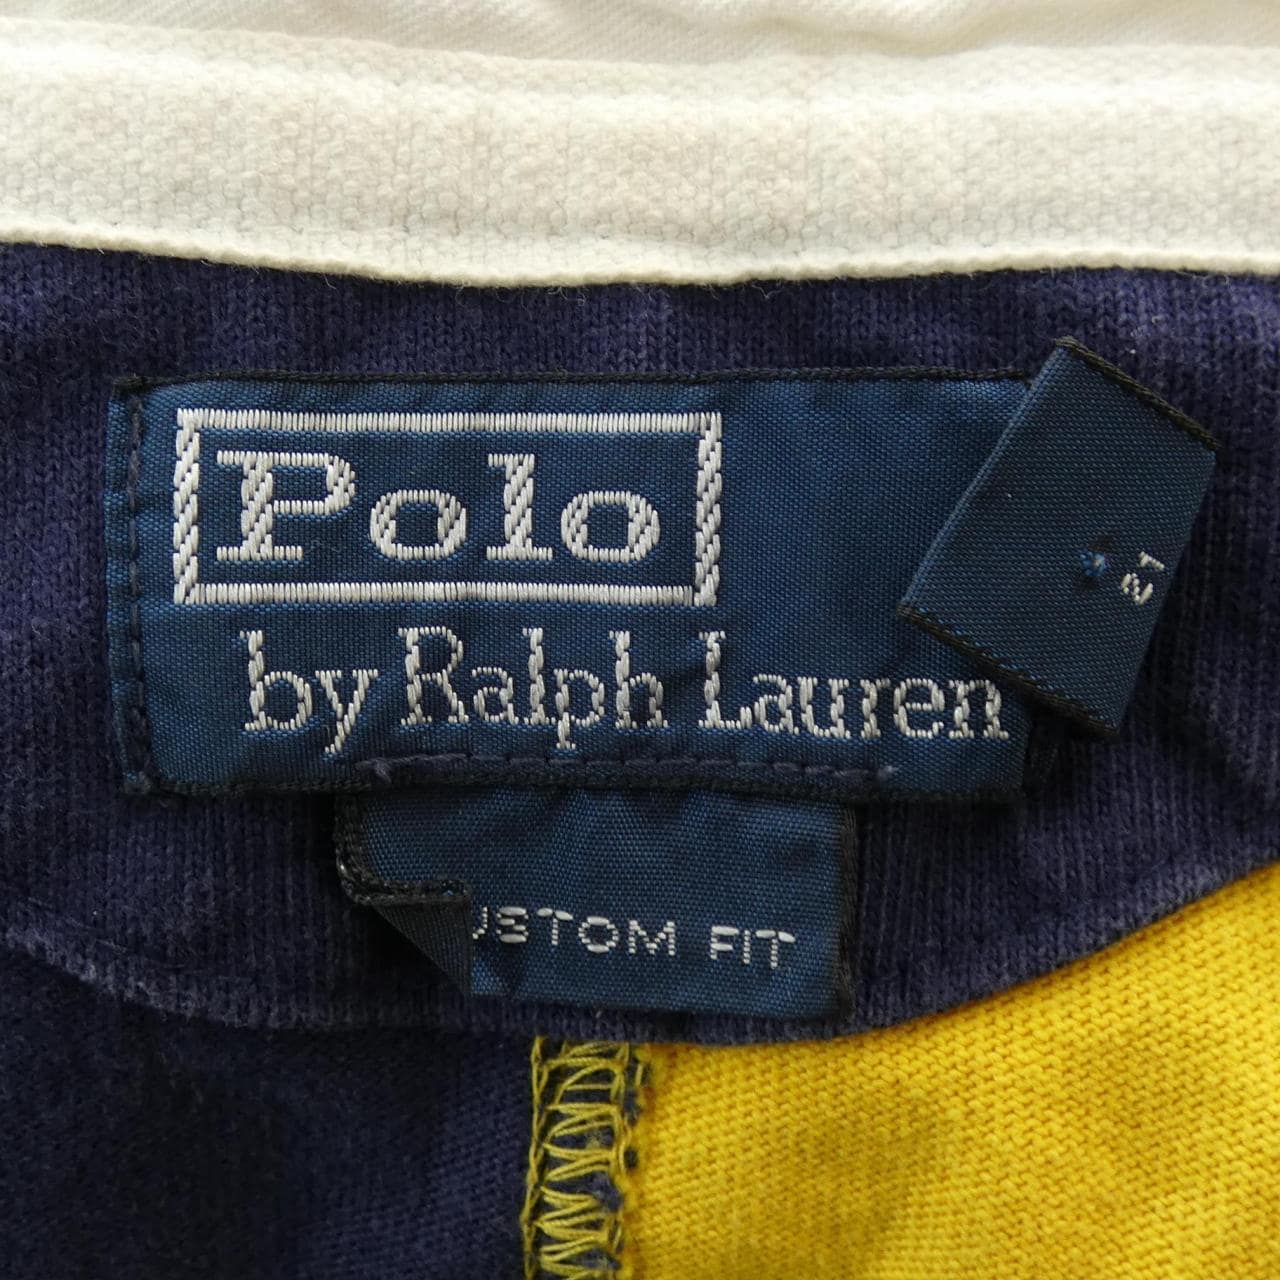 Polo Ralph Lauren POLO RALPH LAUREN polo shirt